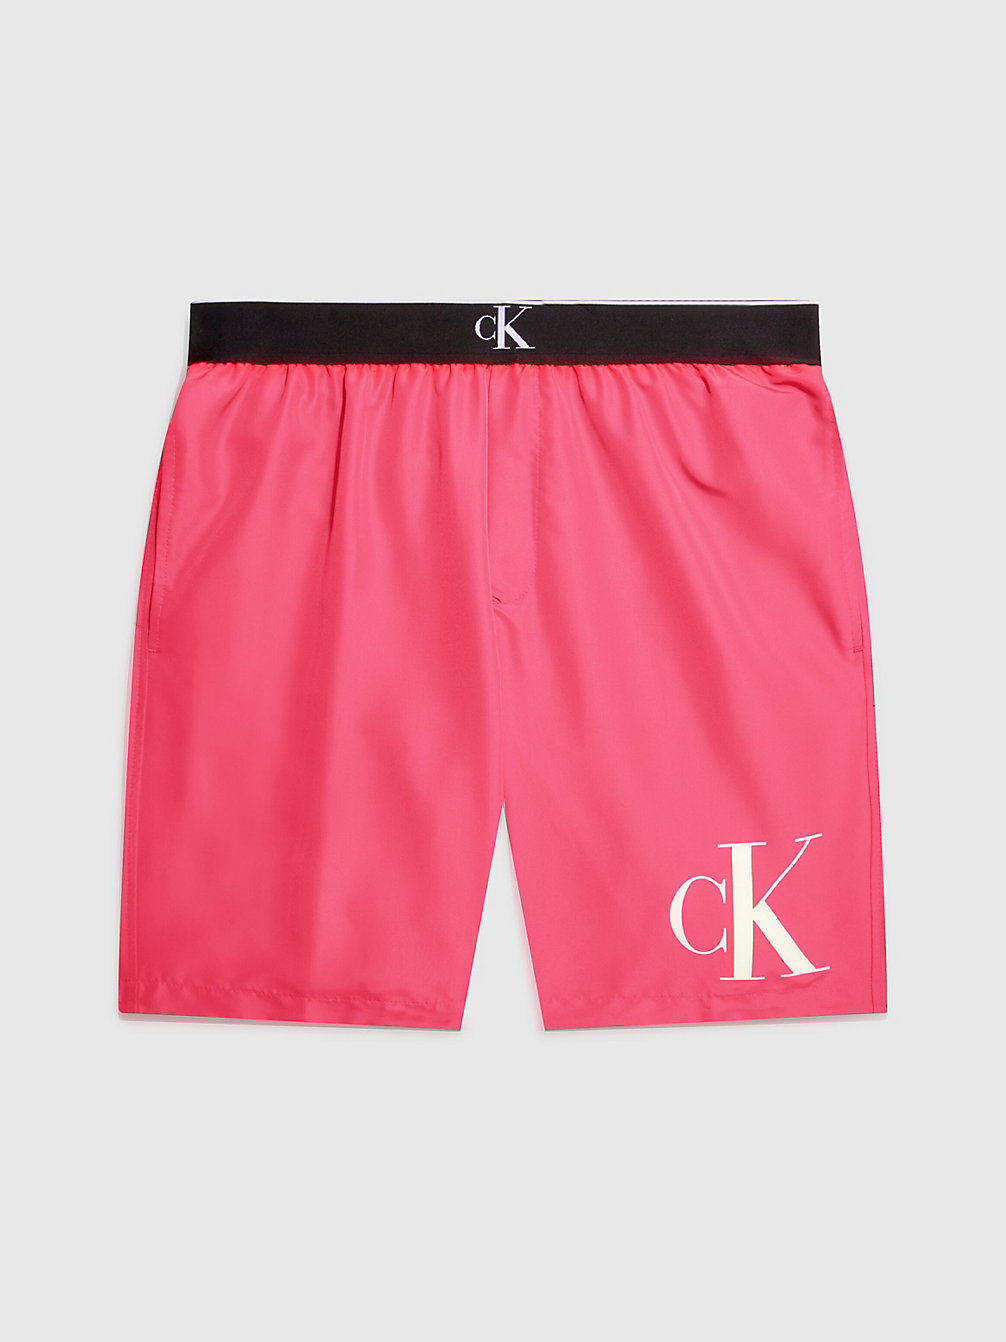 PINK FLASH > Długie Szorty Kąpielowe - CK Monogram > undefined Mężczyźni - Calvin Klein